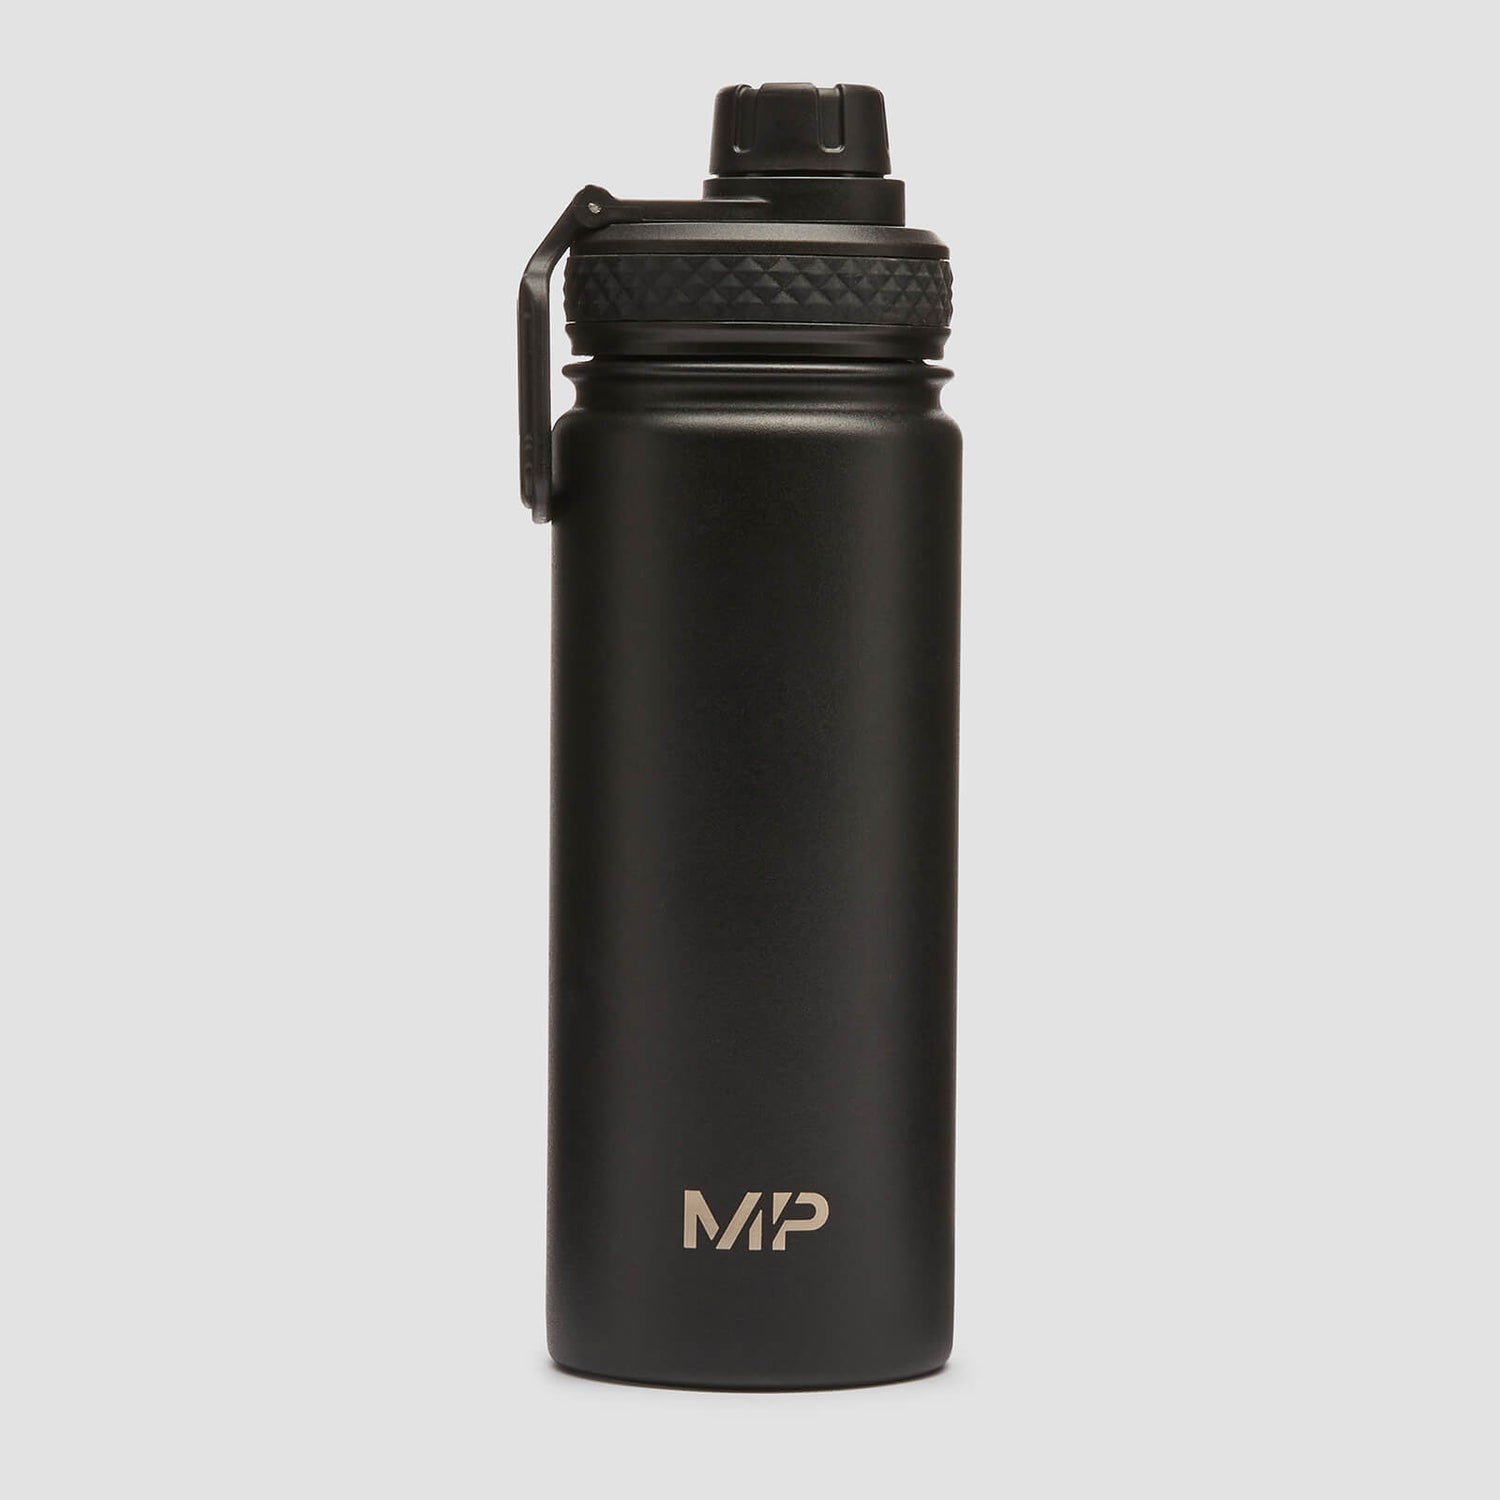 MP ミディアム メタル ウォーター ボトル - ブラック - 500ml